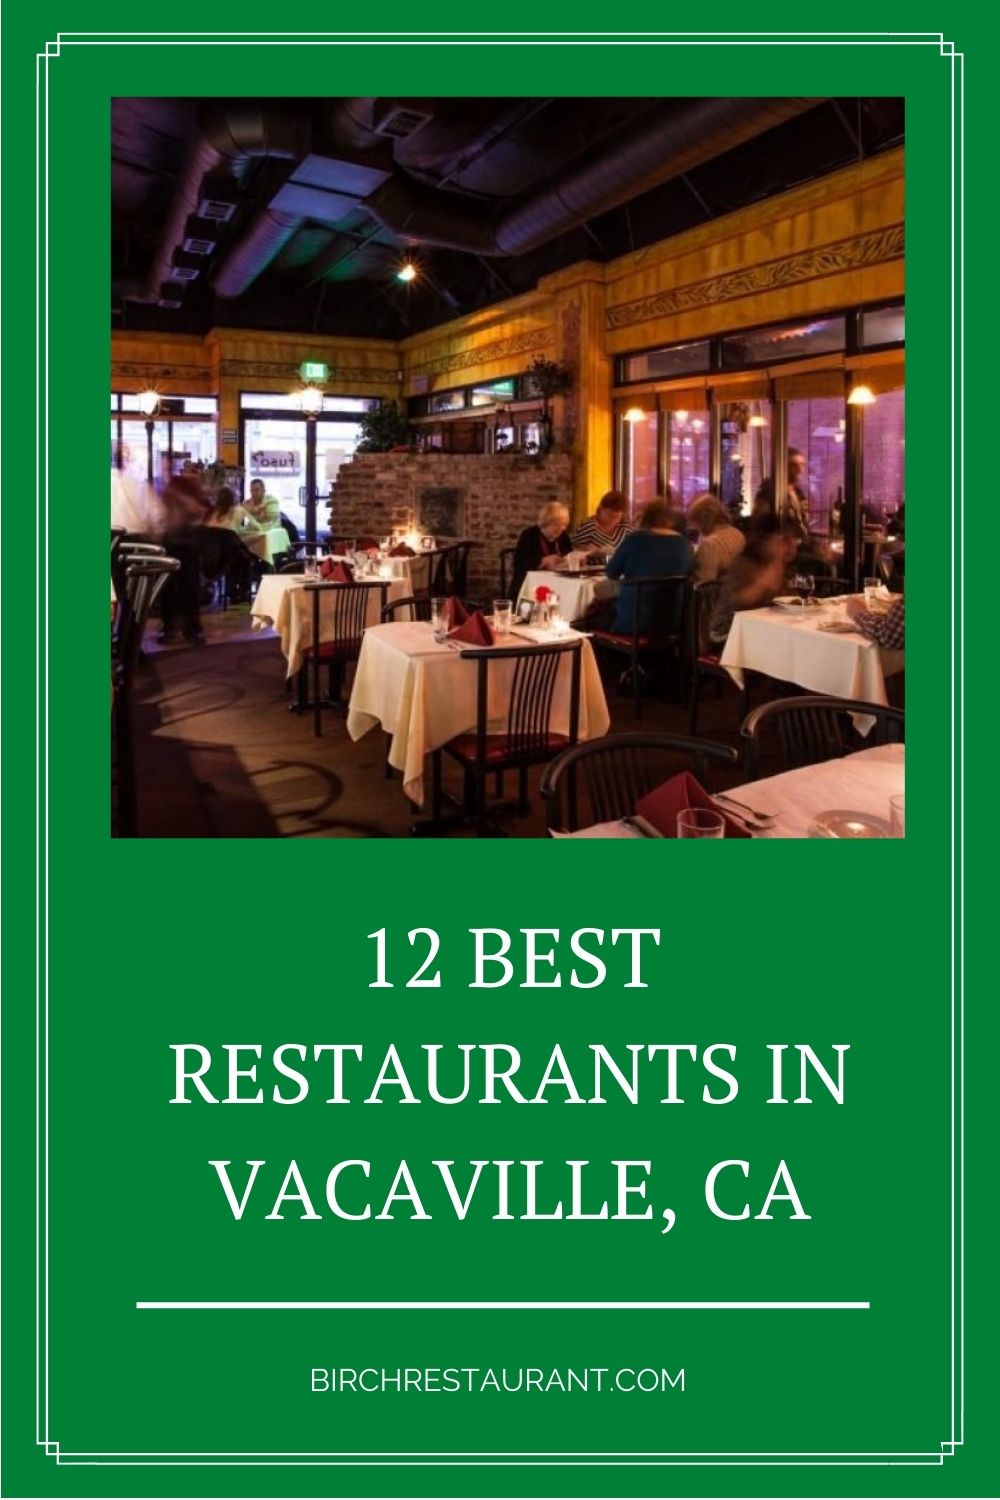 Best Restaurants in Vacaville